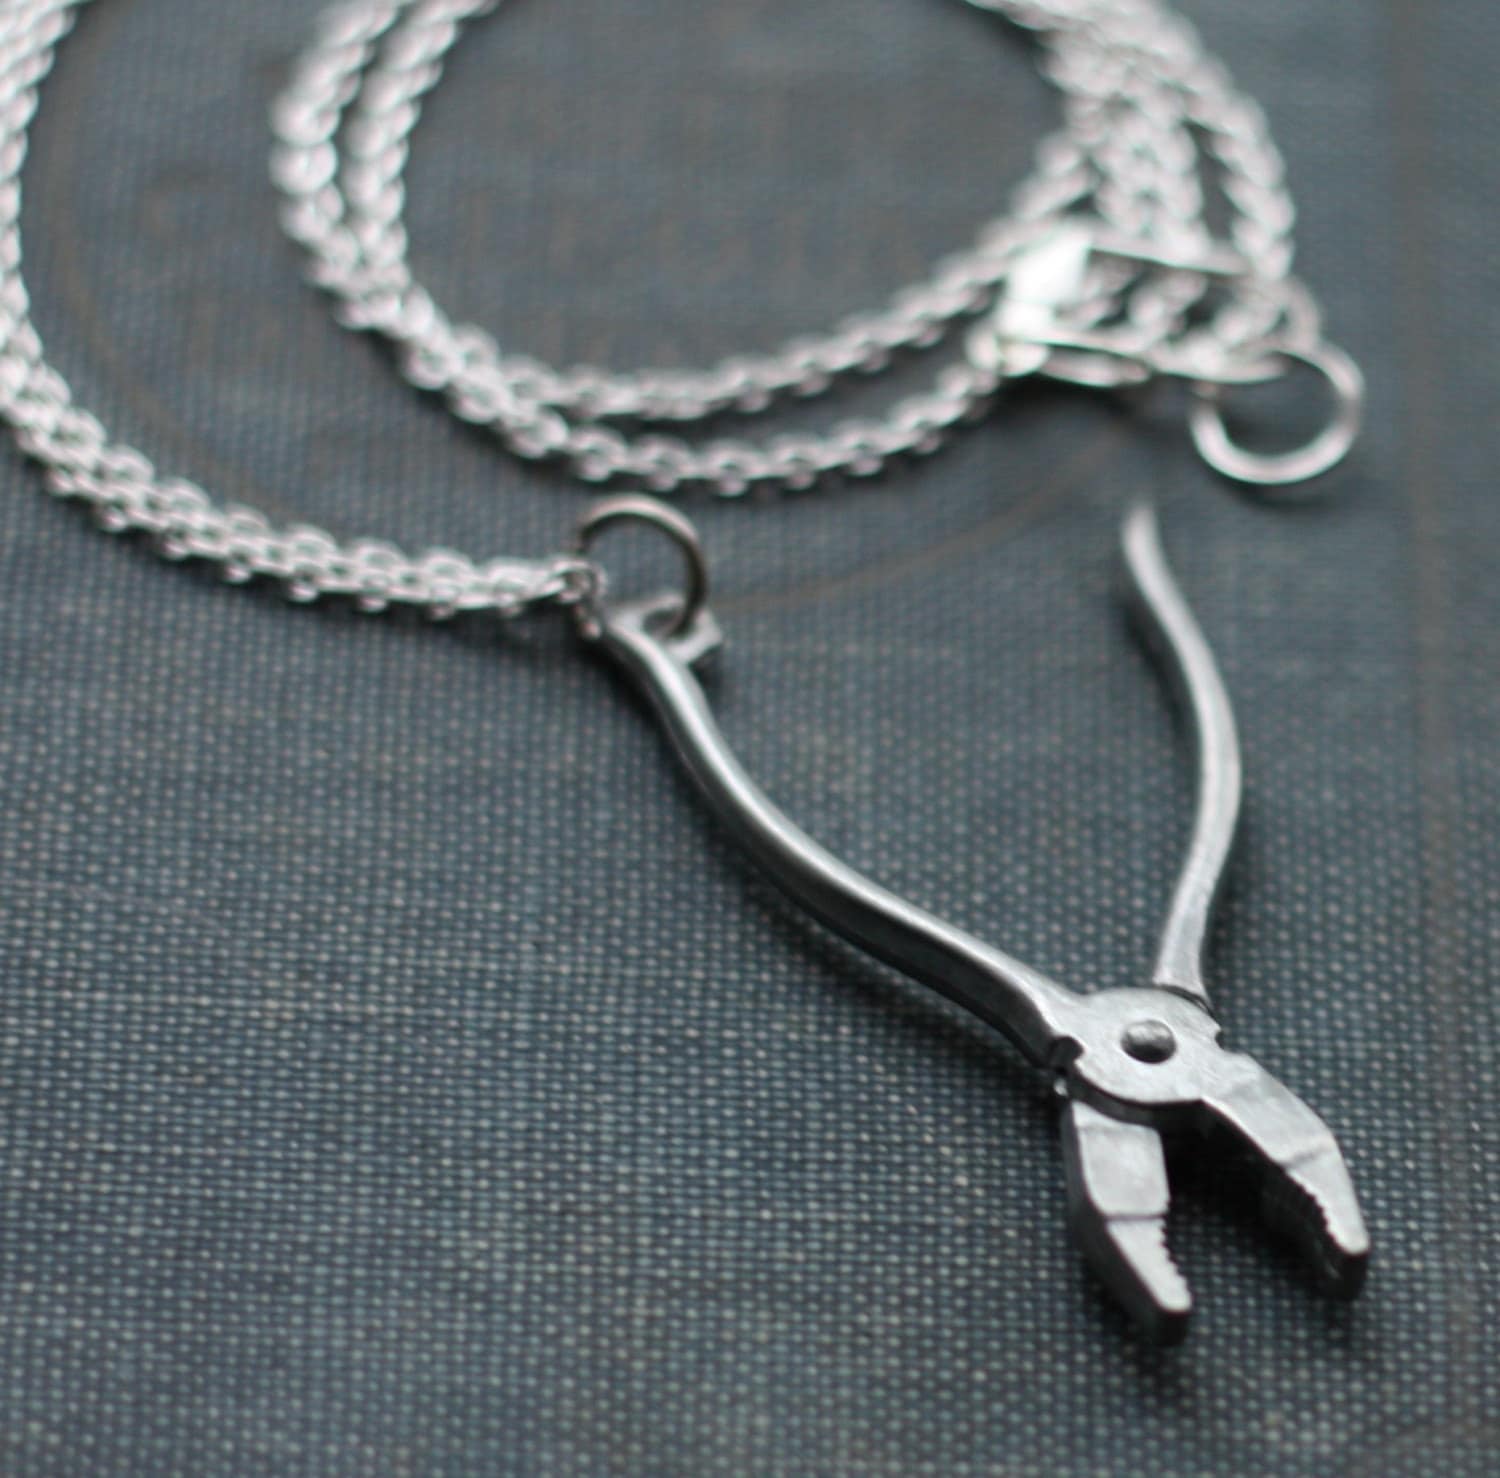 Gorgeous Mini-Plier Necklace Pendant Set